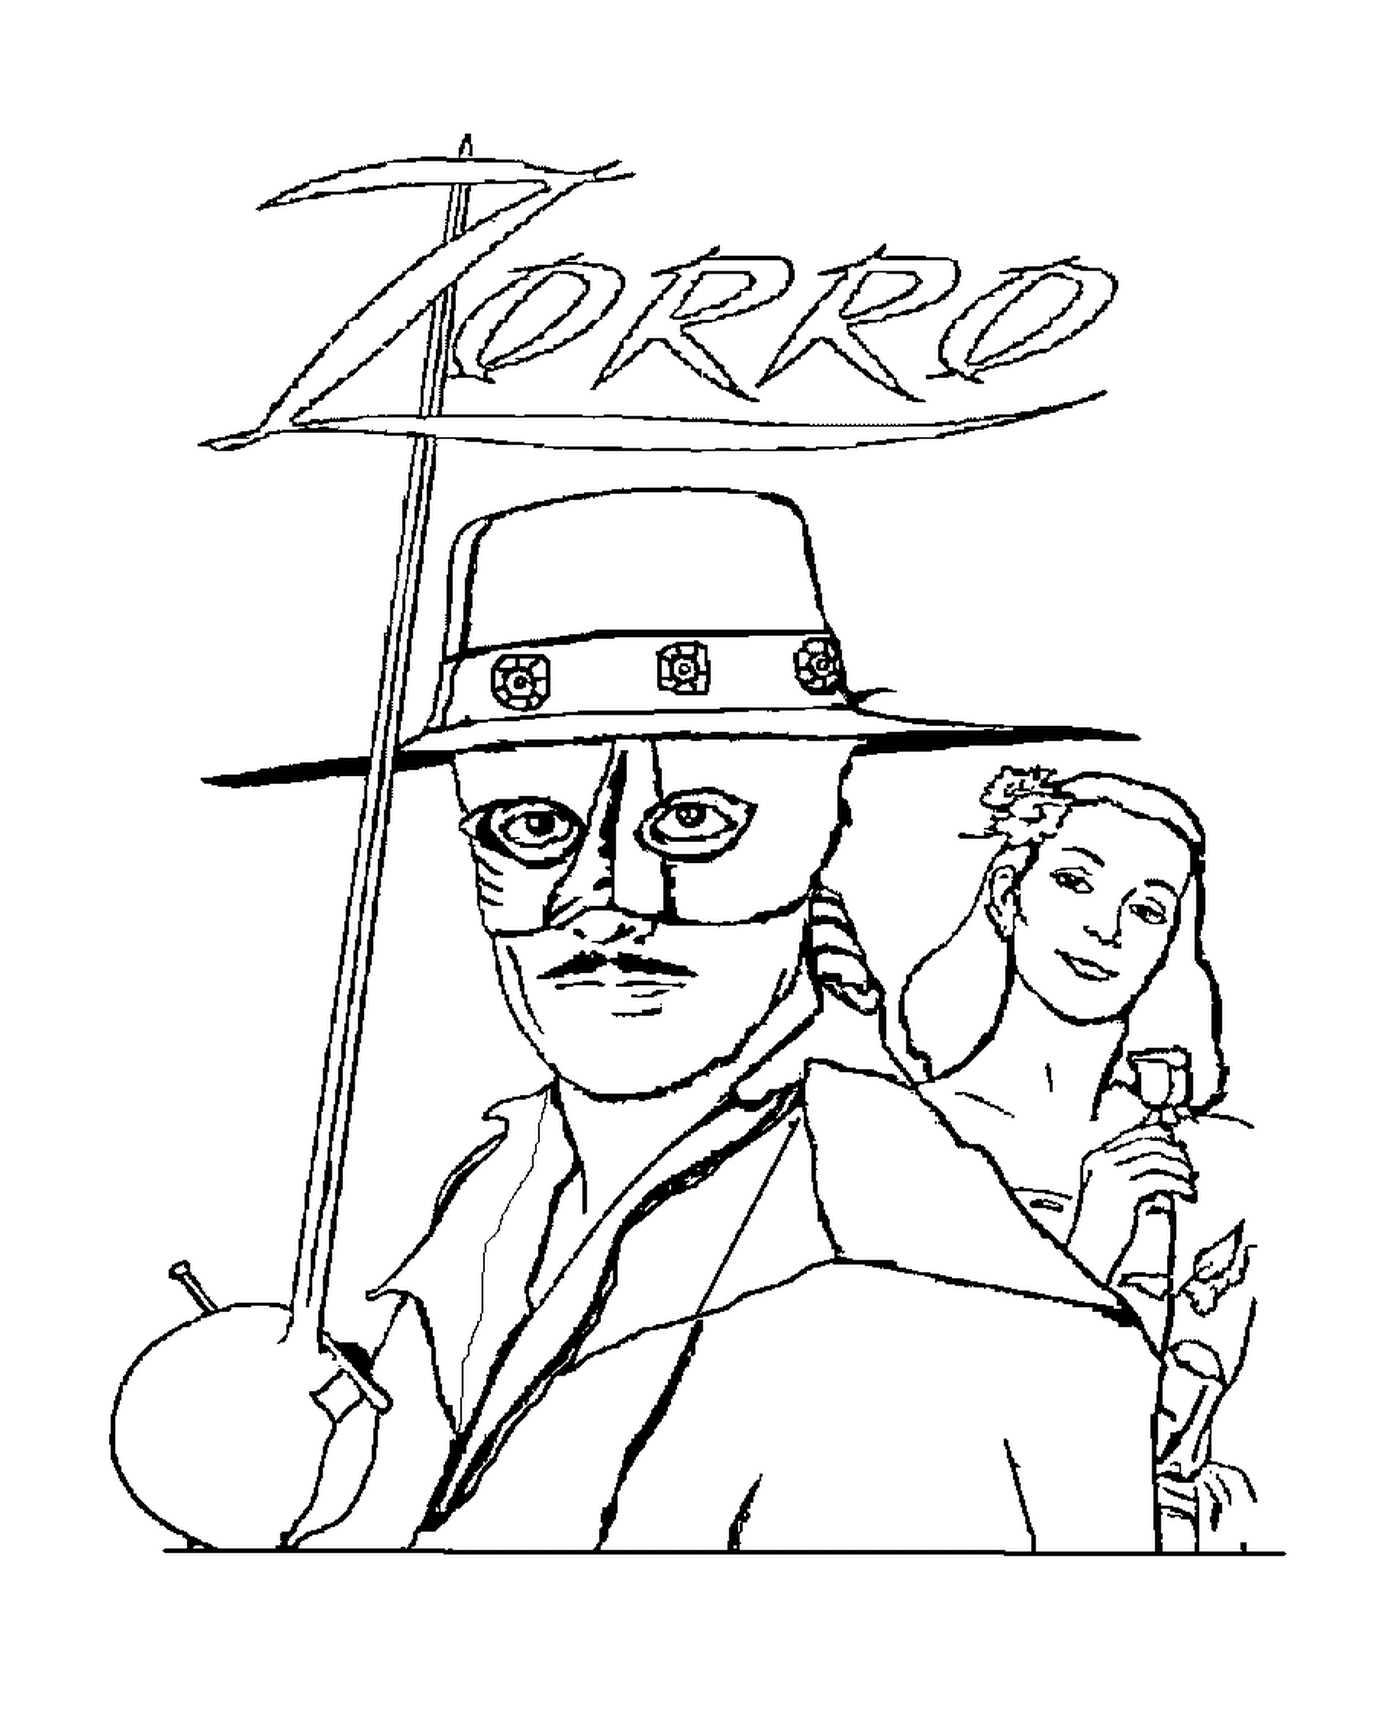  Zorro der maskierte Selbstjustizler und ein Mann 